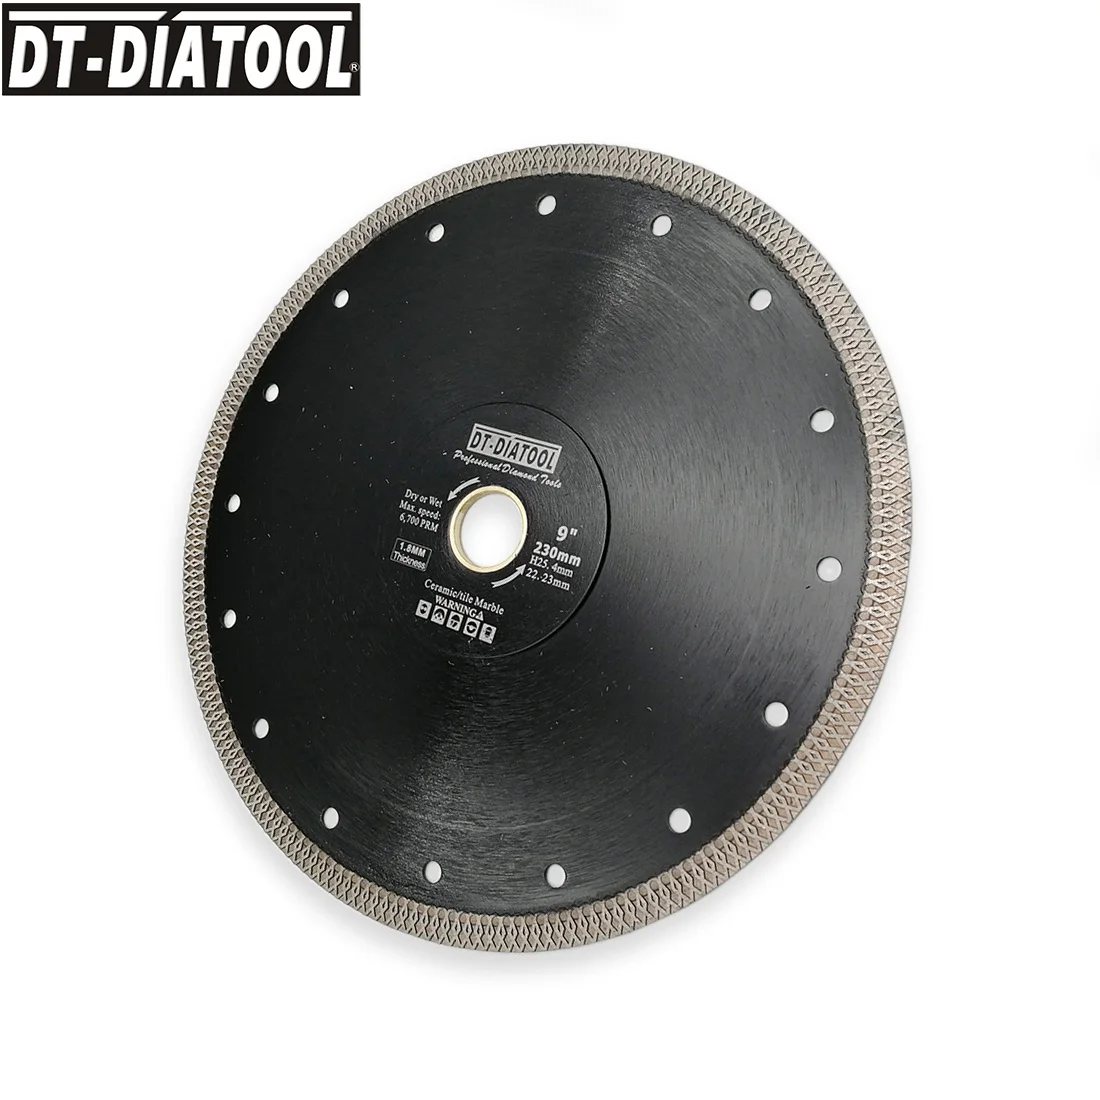 DT-DIATOOL 1 шт. горячий прессованный сухой или влажный Алмазный усиленный сердцевина режущий диск X сетка турбо пилы диаметр 9 дюймов/230 мм колеса